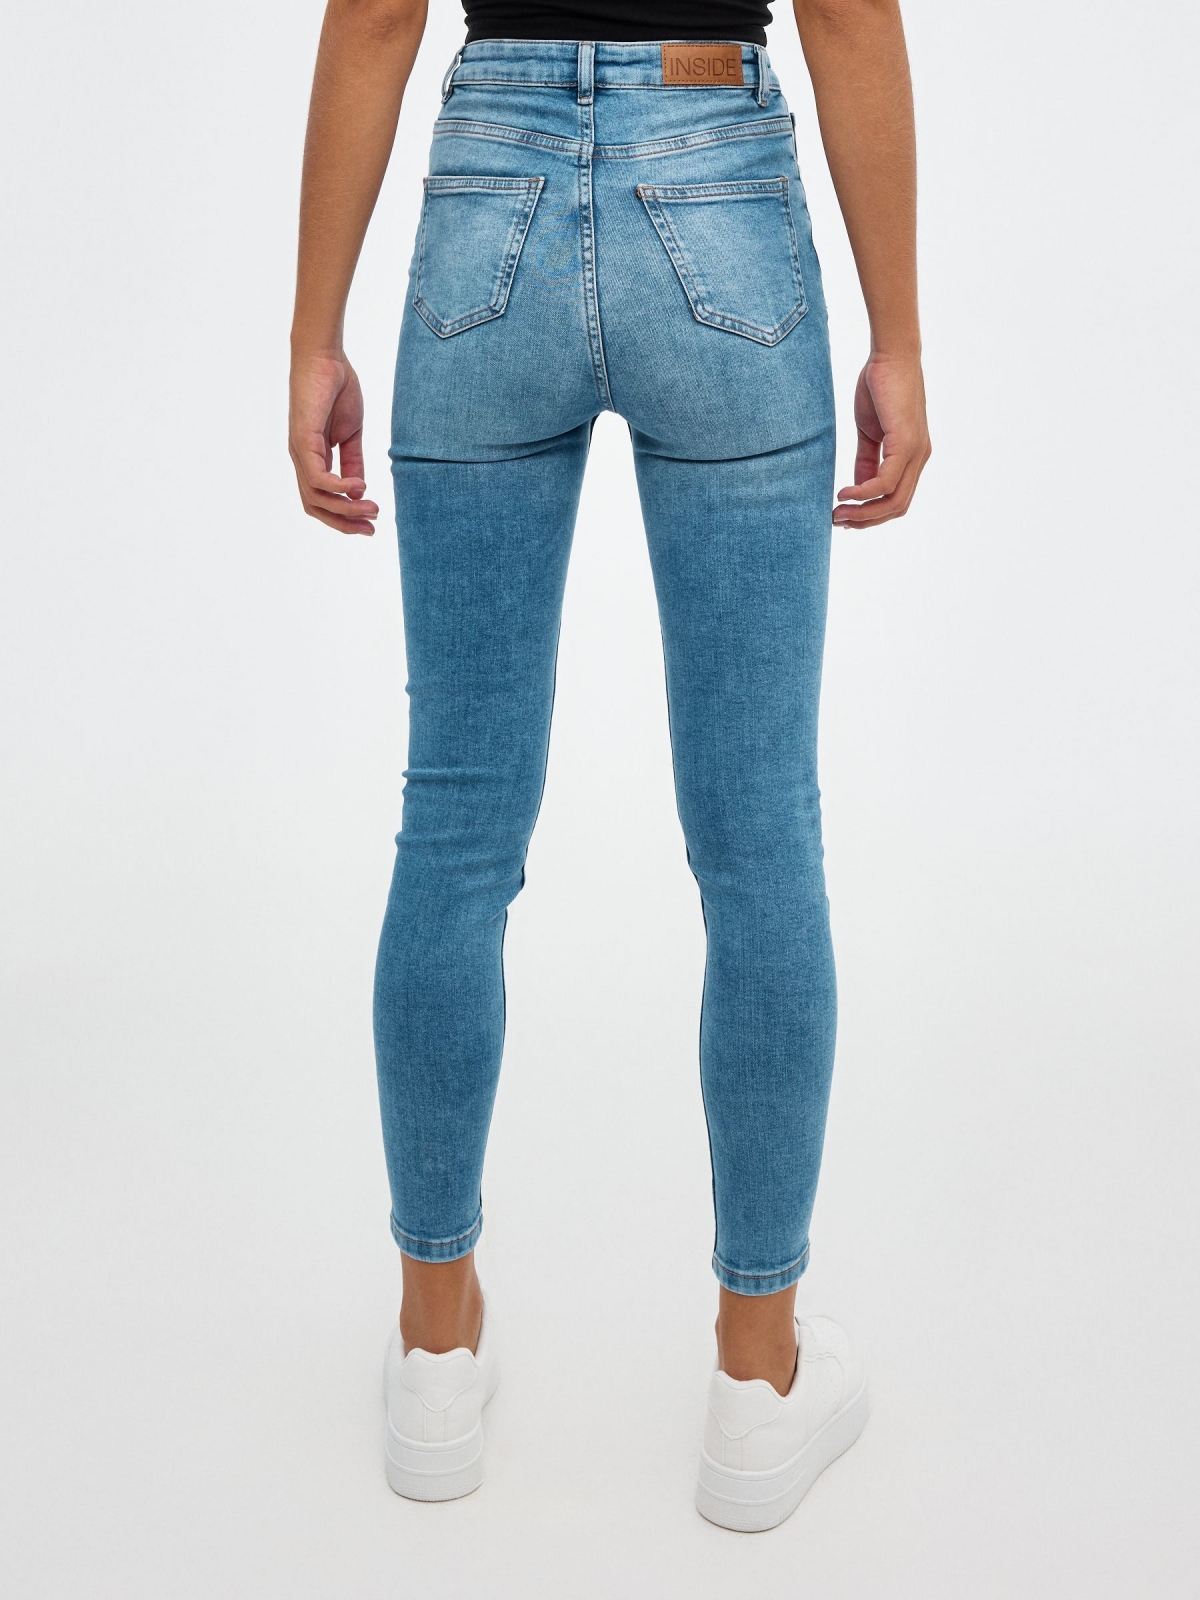 Jeans skinny de cintura subida azul vista meia traseira